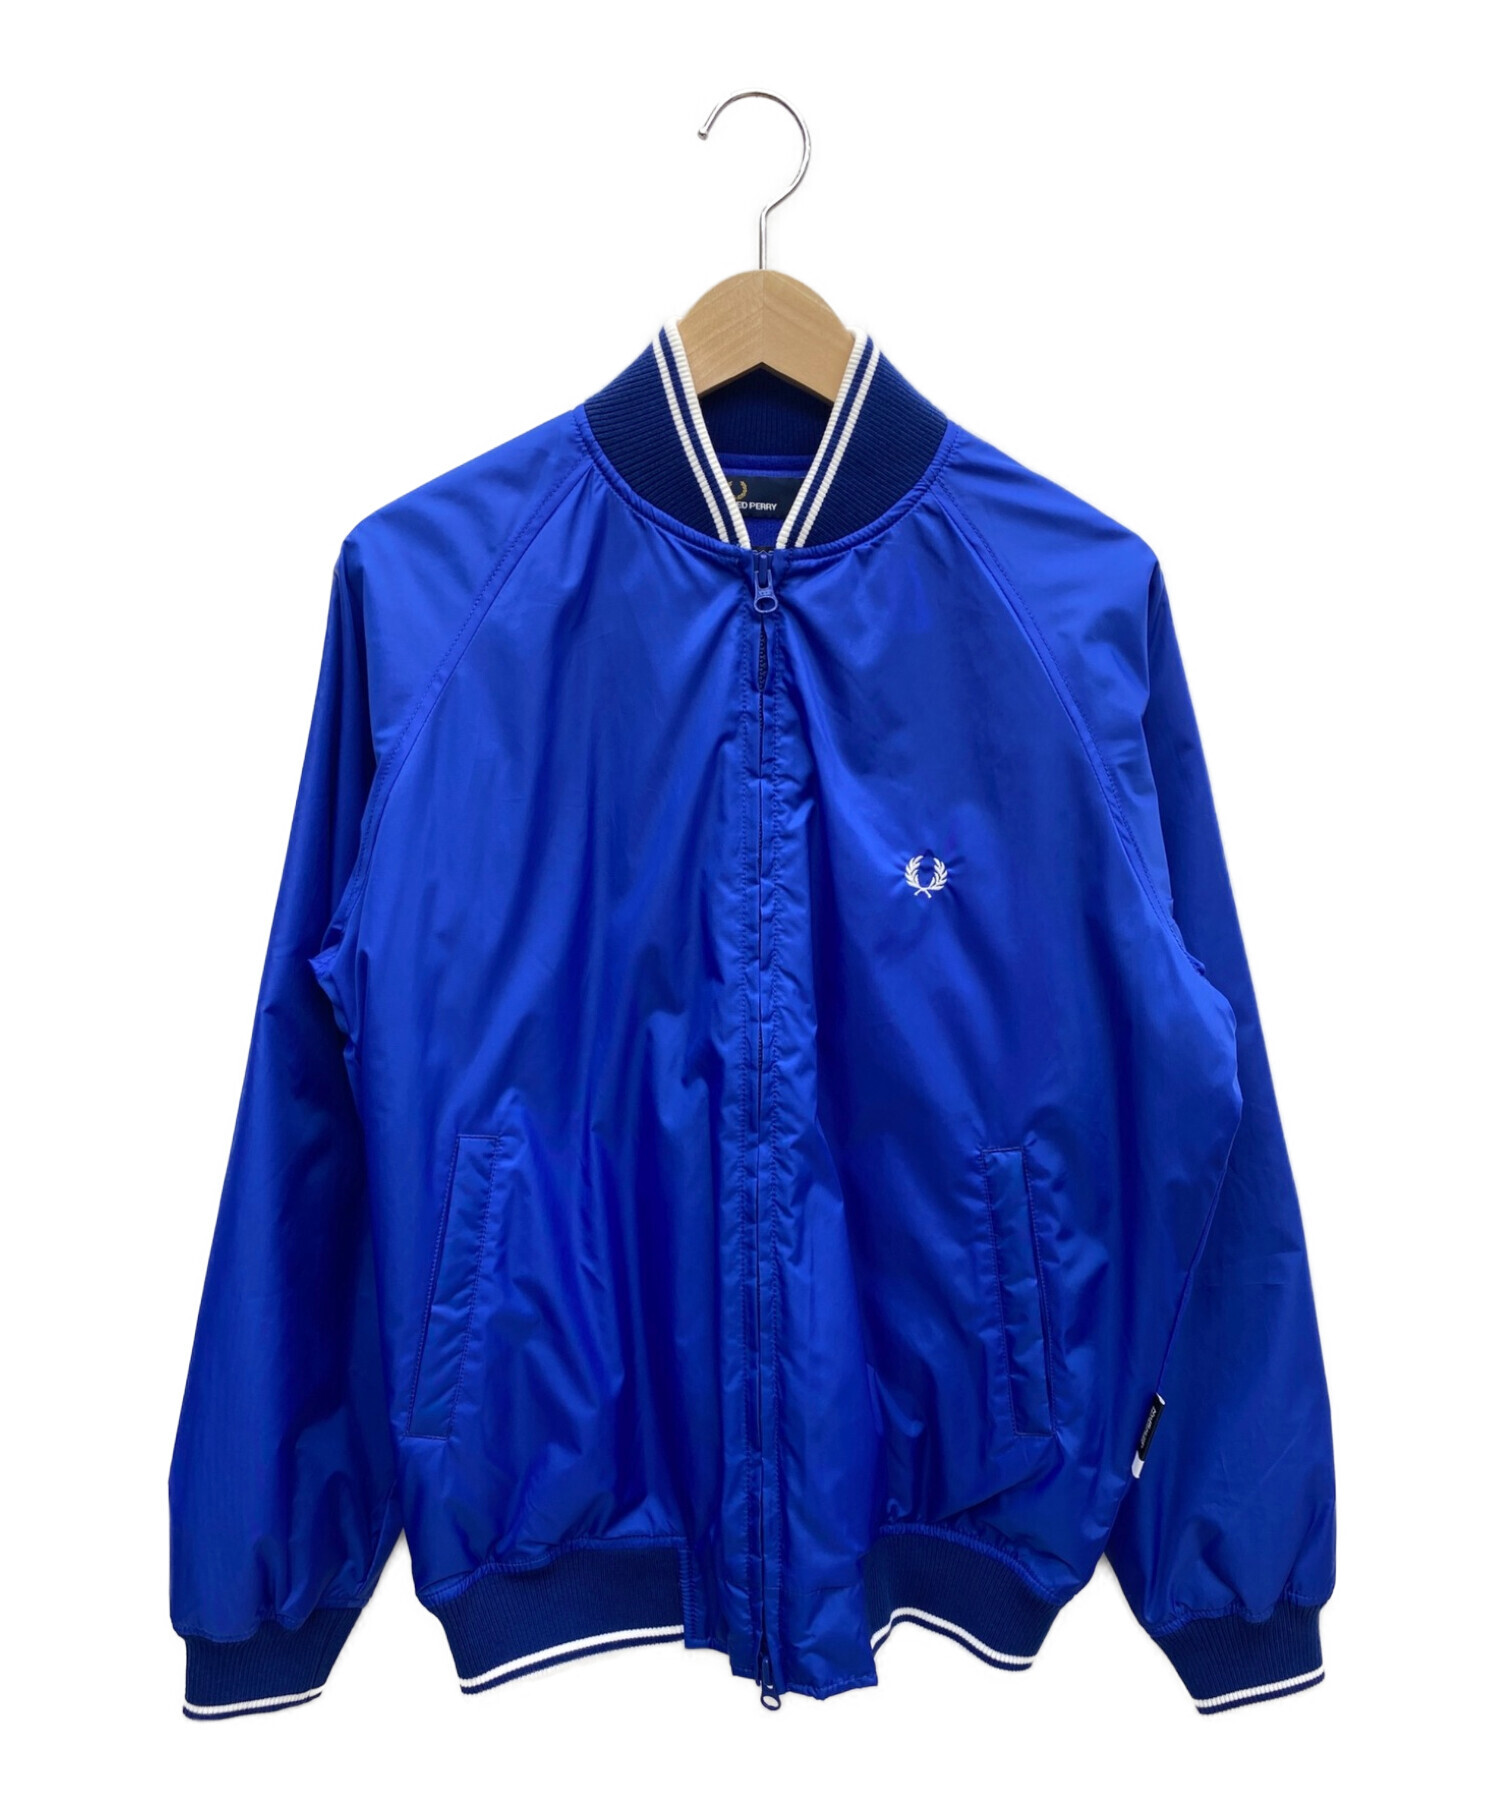 FRED PERRY (フレッドペリー) ダウンボンバーネックジャケット ブルー サイズ:S